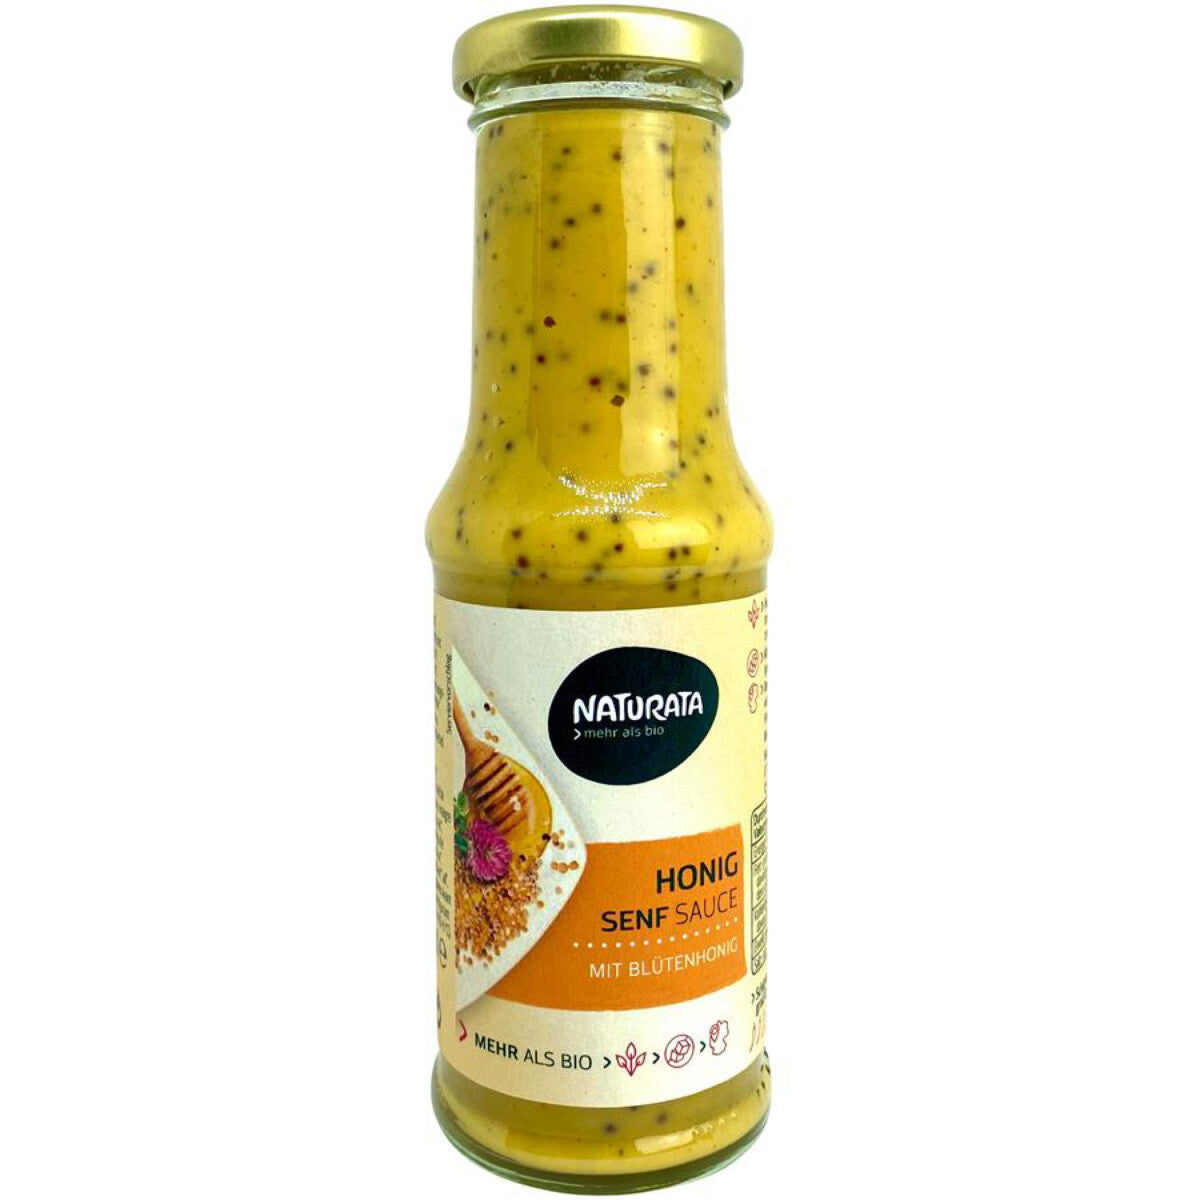 NATURATA Honig Senf Sauce  - 210 ml